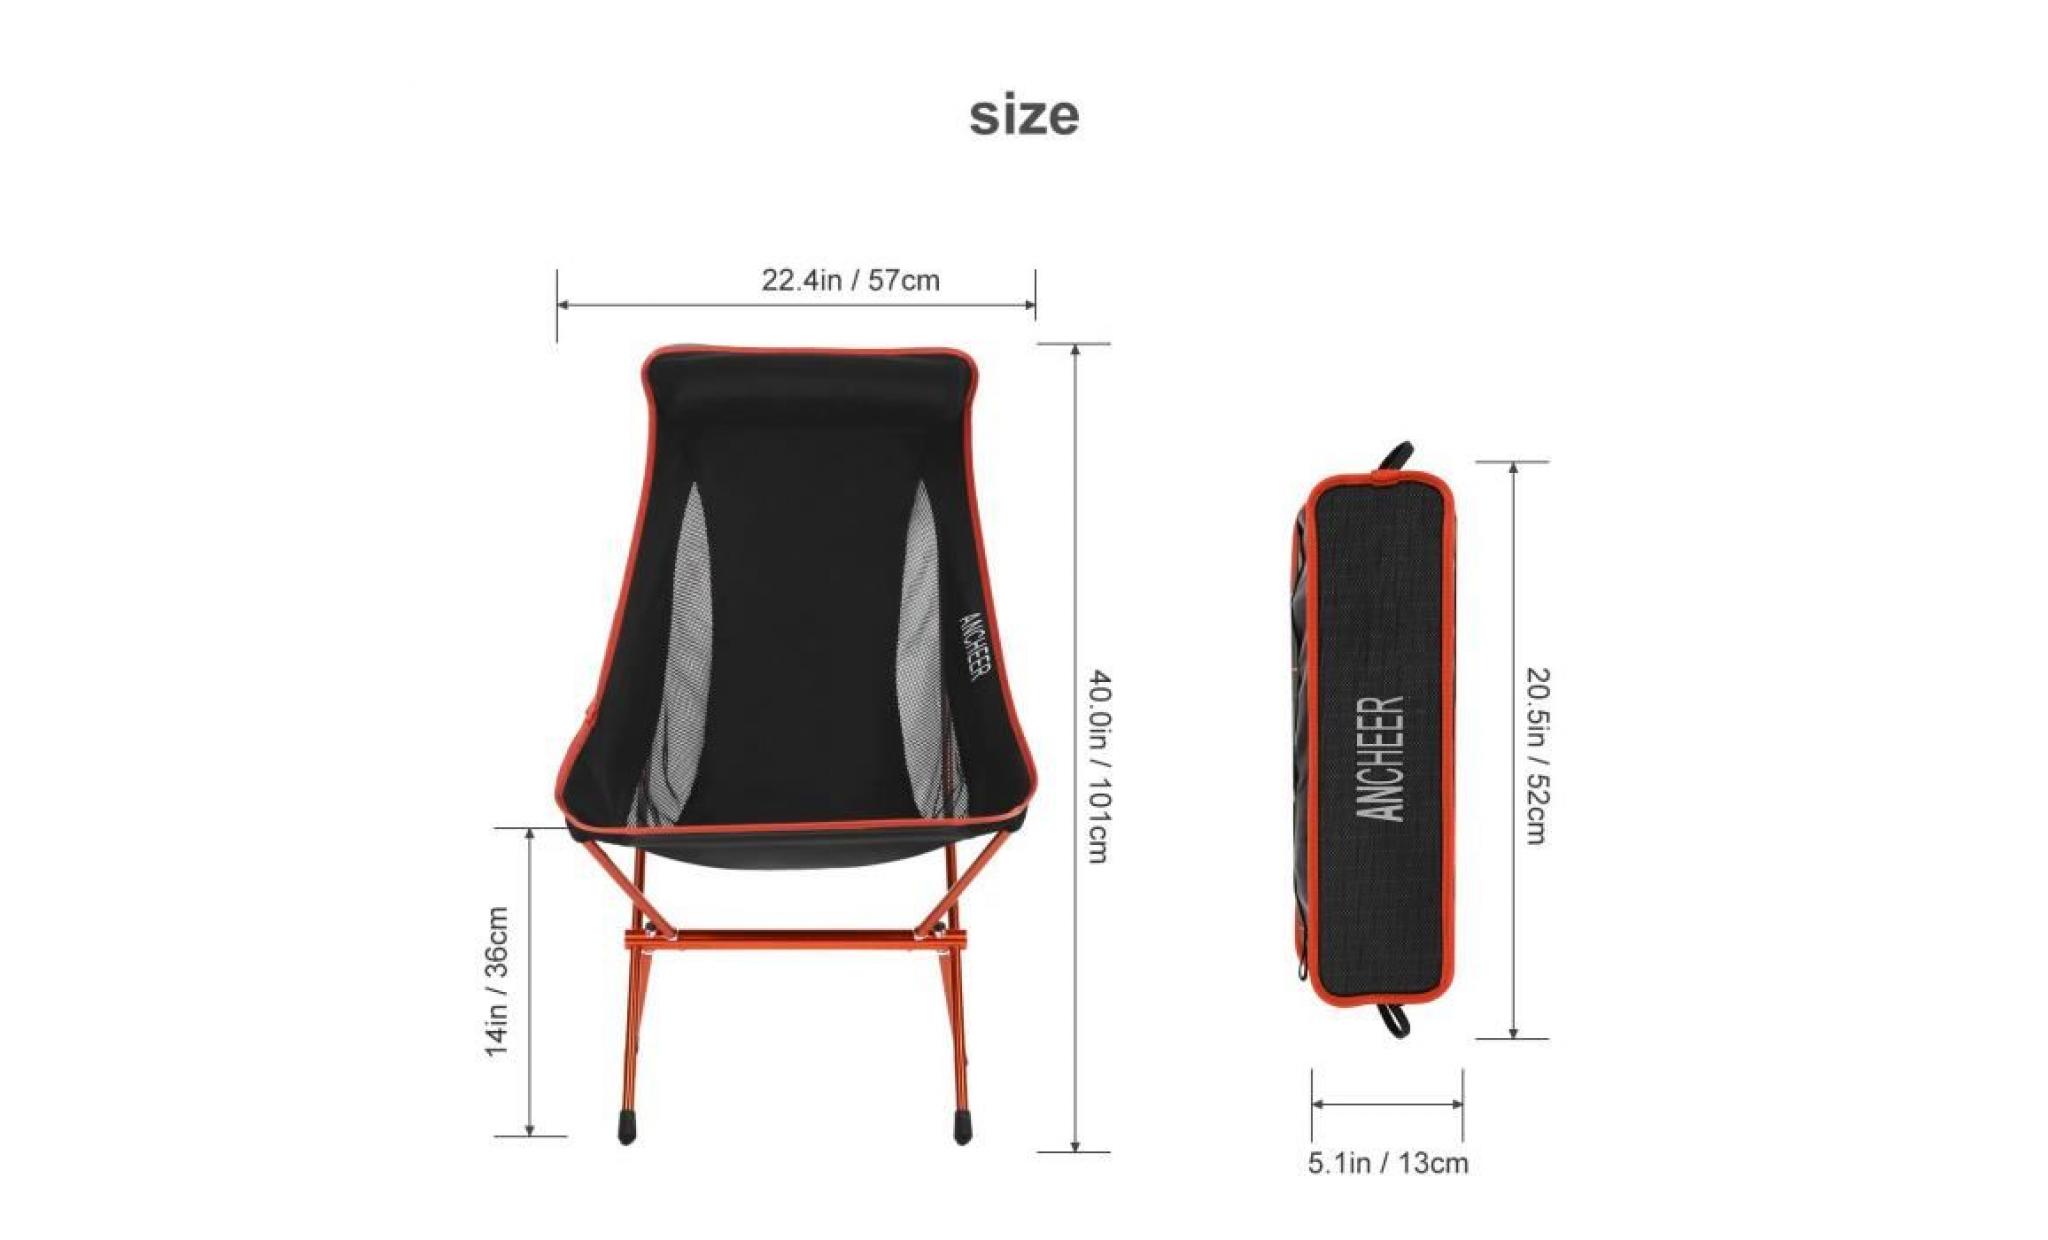 chaise de camping pliante orange ultra légère pas cher